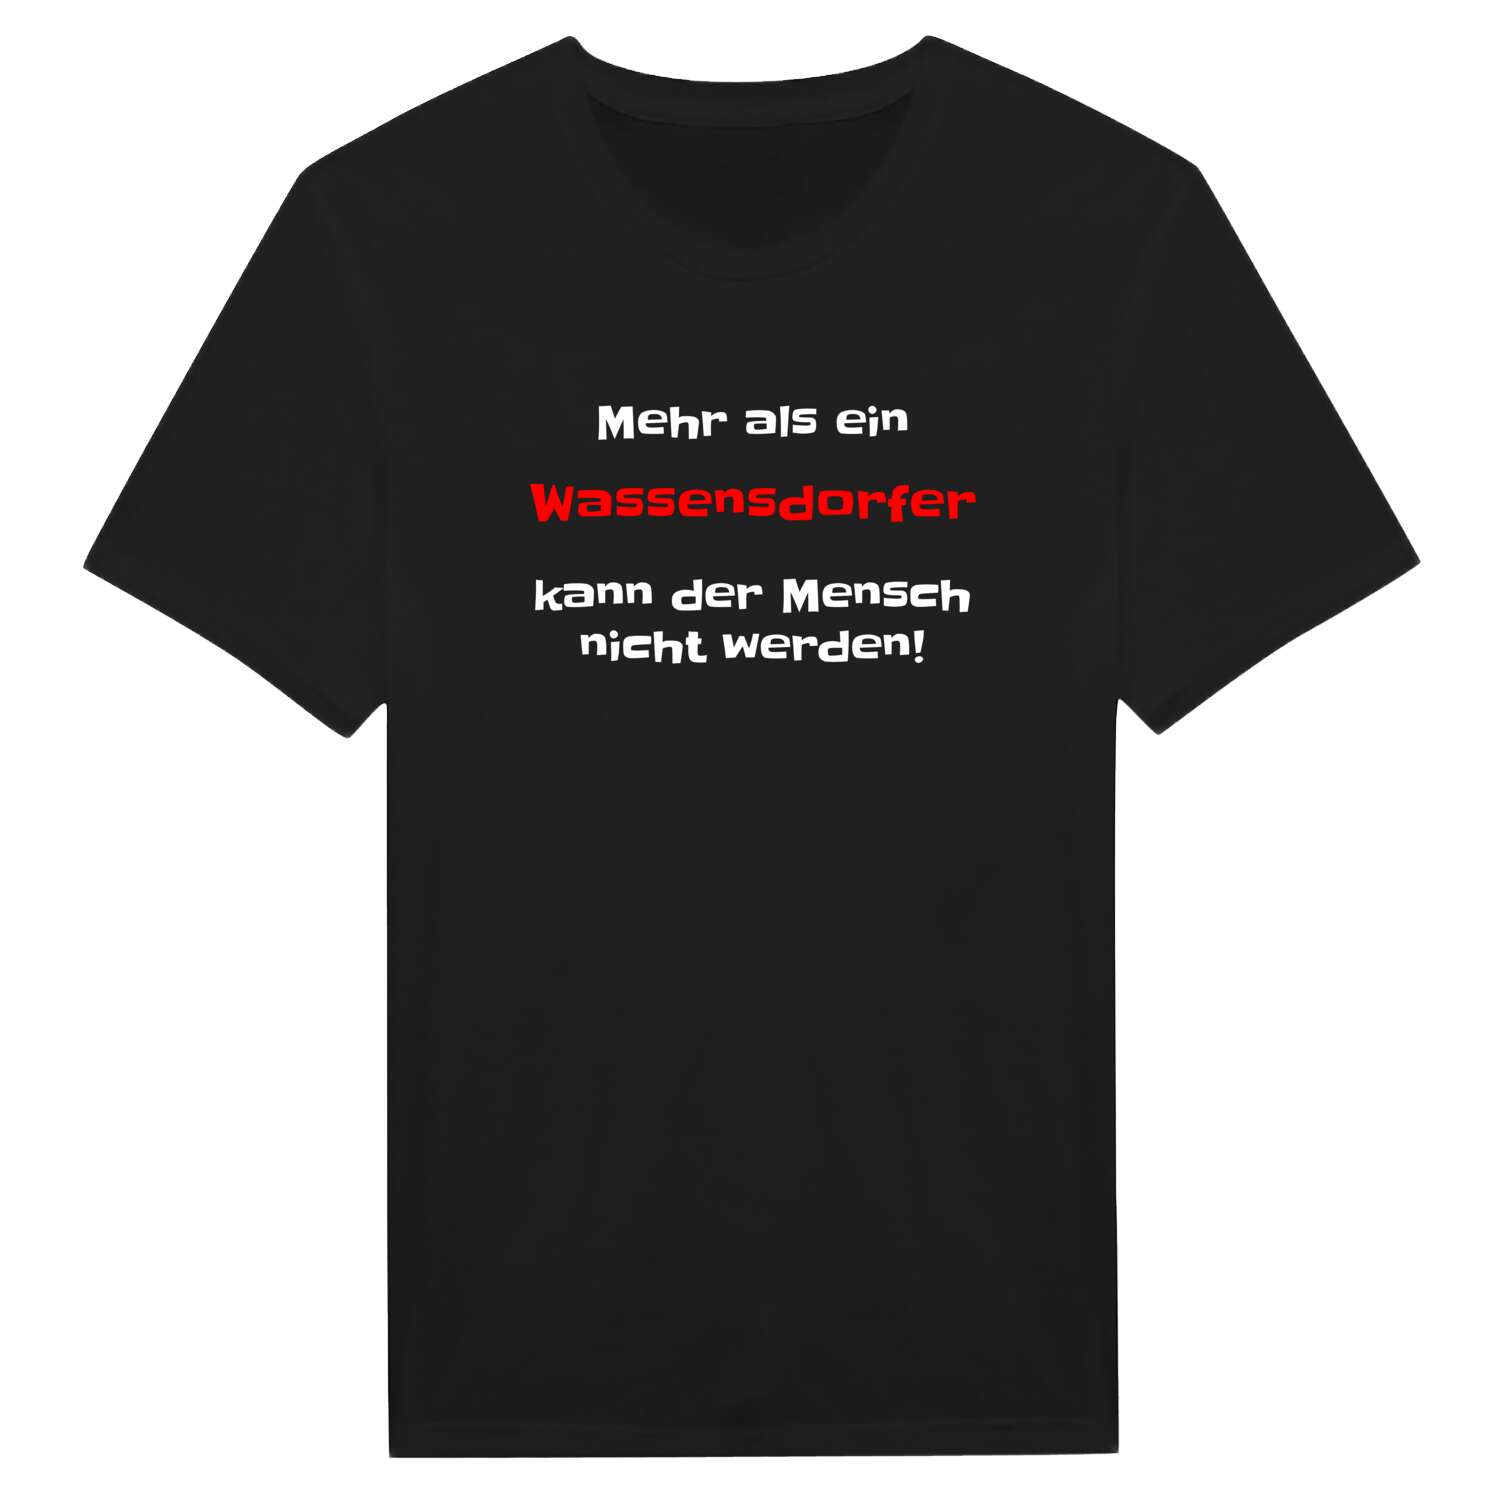 Wassensdorf T-Shirt »Mehr als ein«